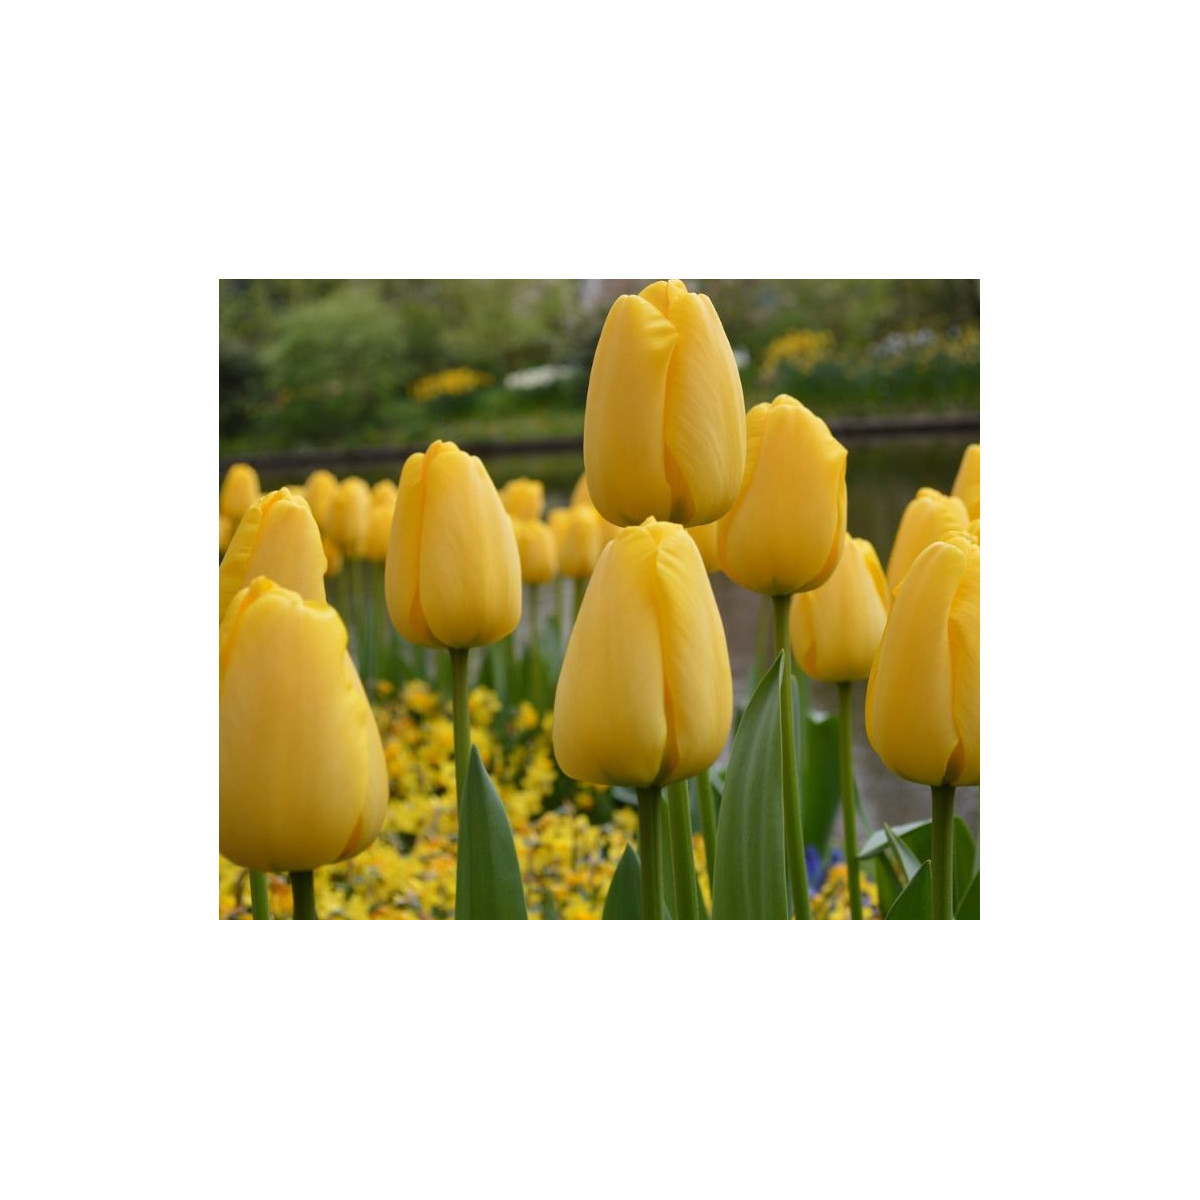 Cibulky tulipánů koupit - Golden Parade - 3 ks